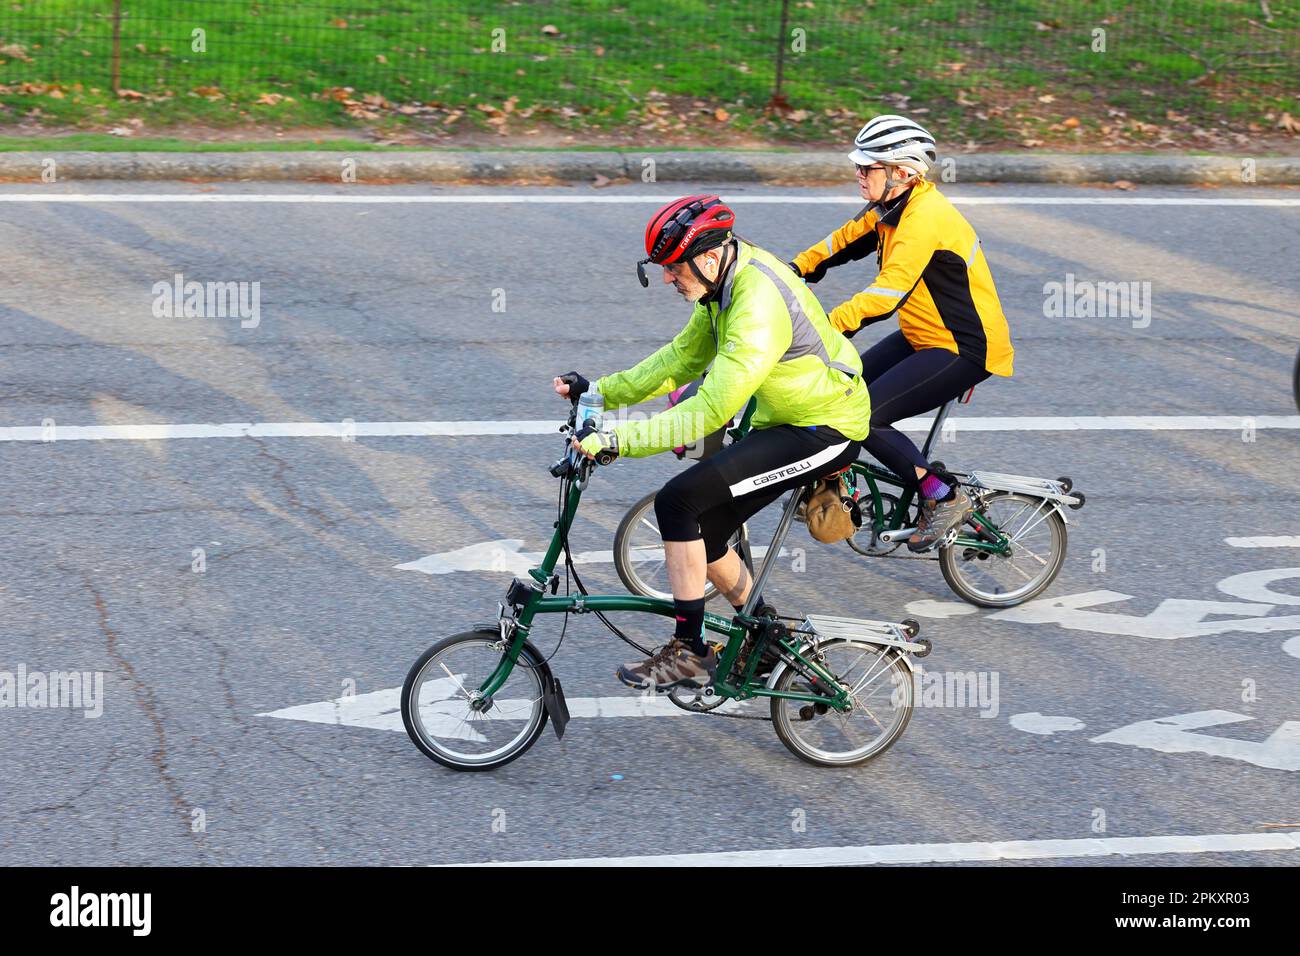 Ein älteres Paar, das Brompton-Faltfahrräder fährt. Aktive Senioren, die Fahrräder fahren. Stockfoto